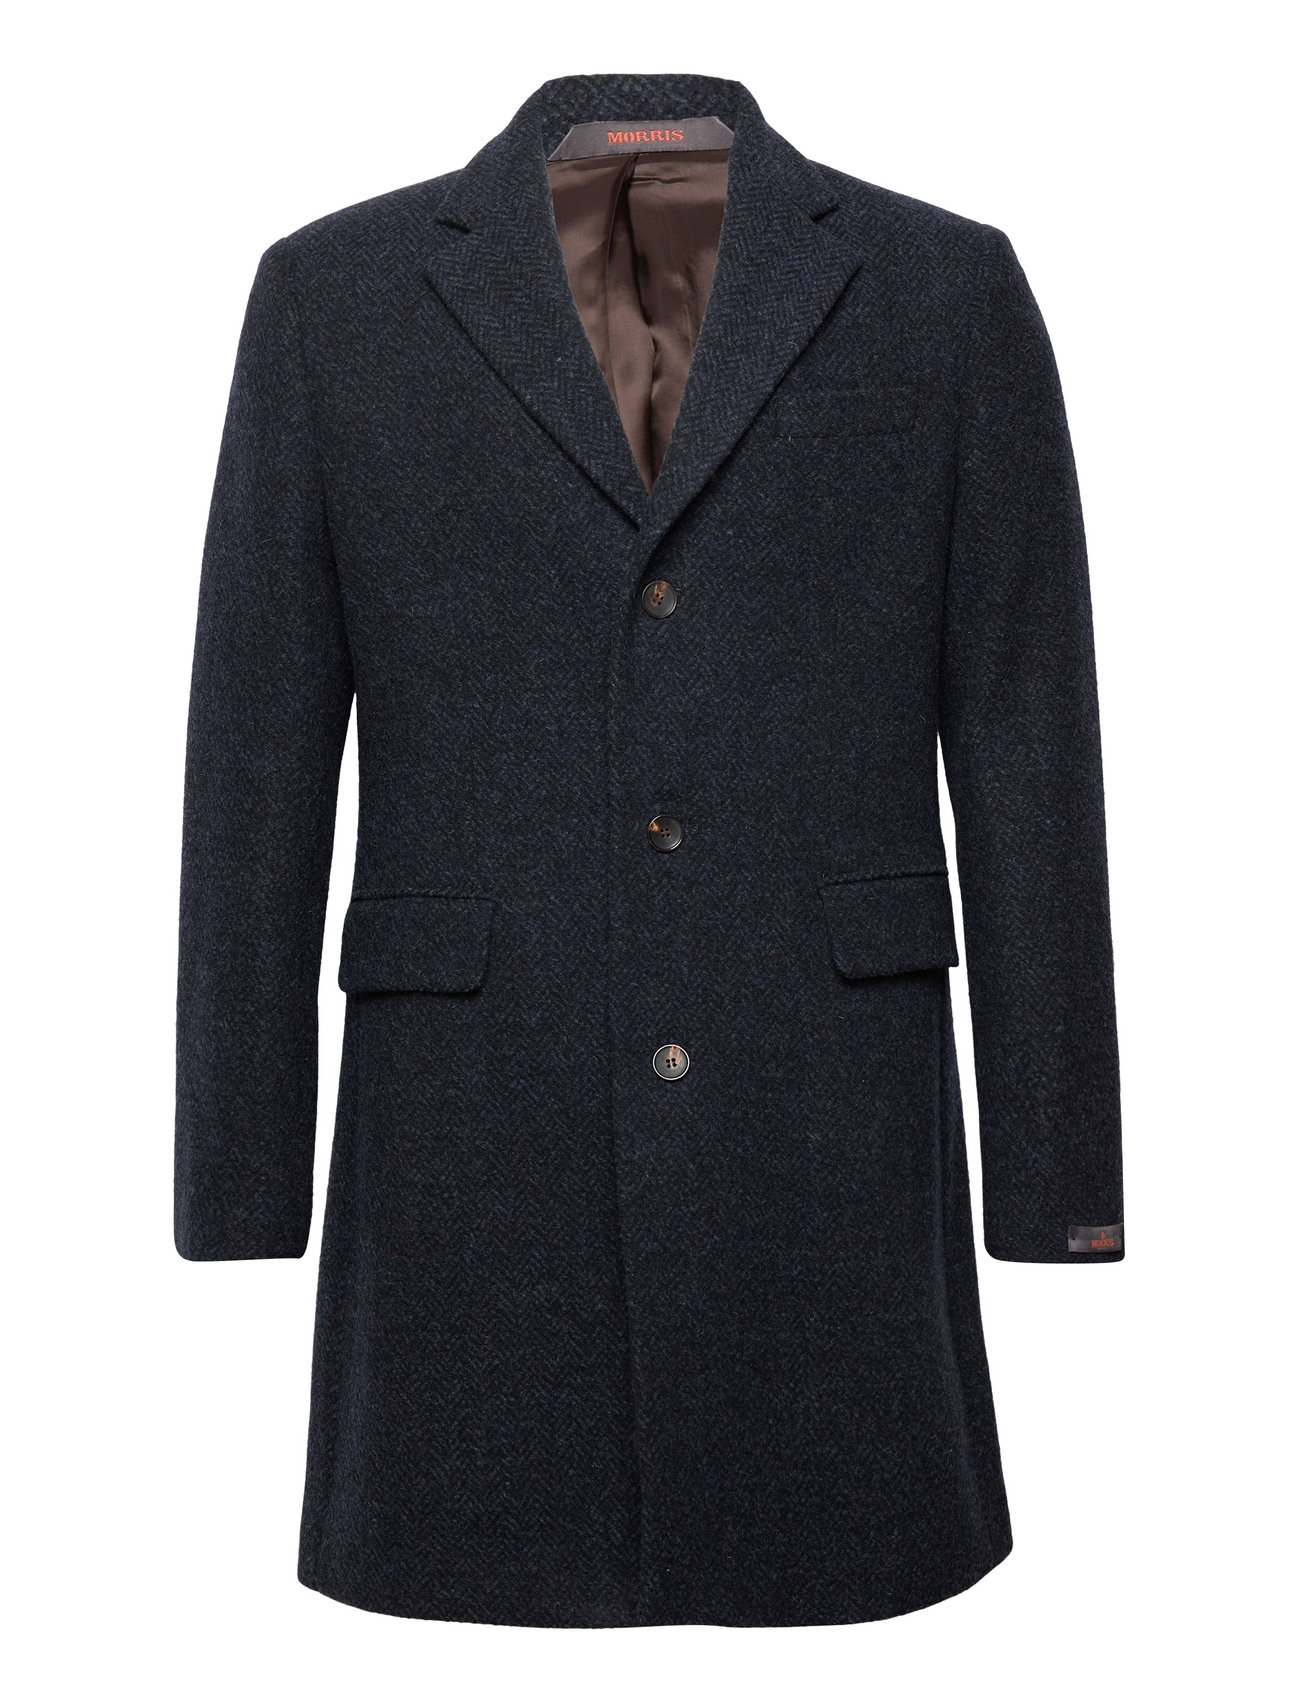 Morris Morris Herringbone Coat - 499 €. Buy Winter Coats from Morris ...